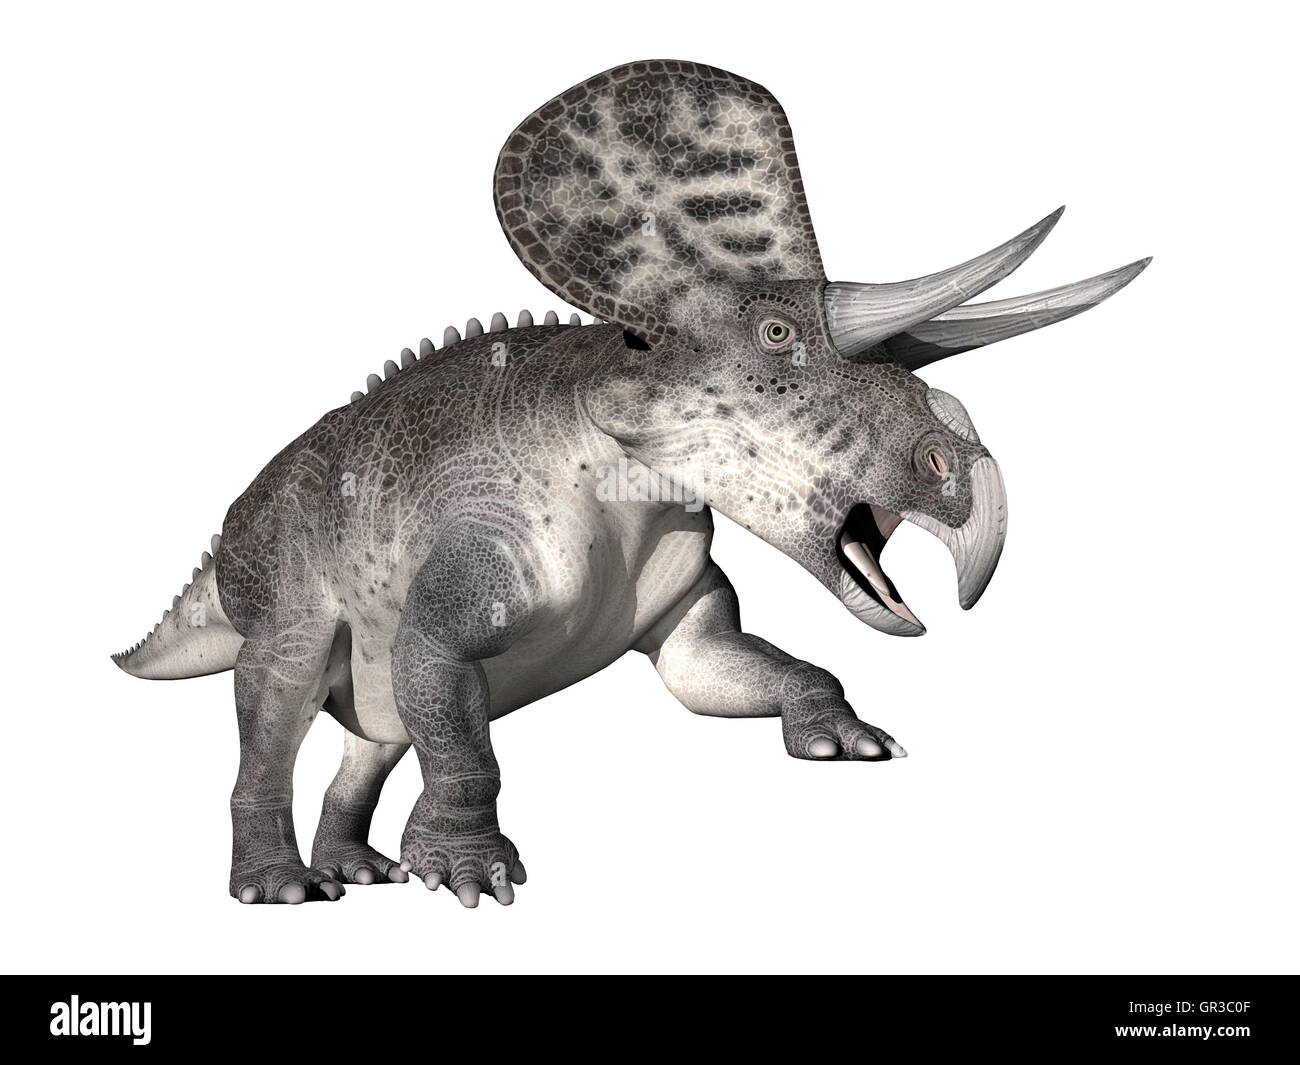 Zuniceratops dinosaur - 3D render Stock Photo